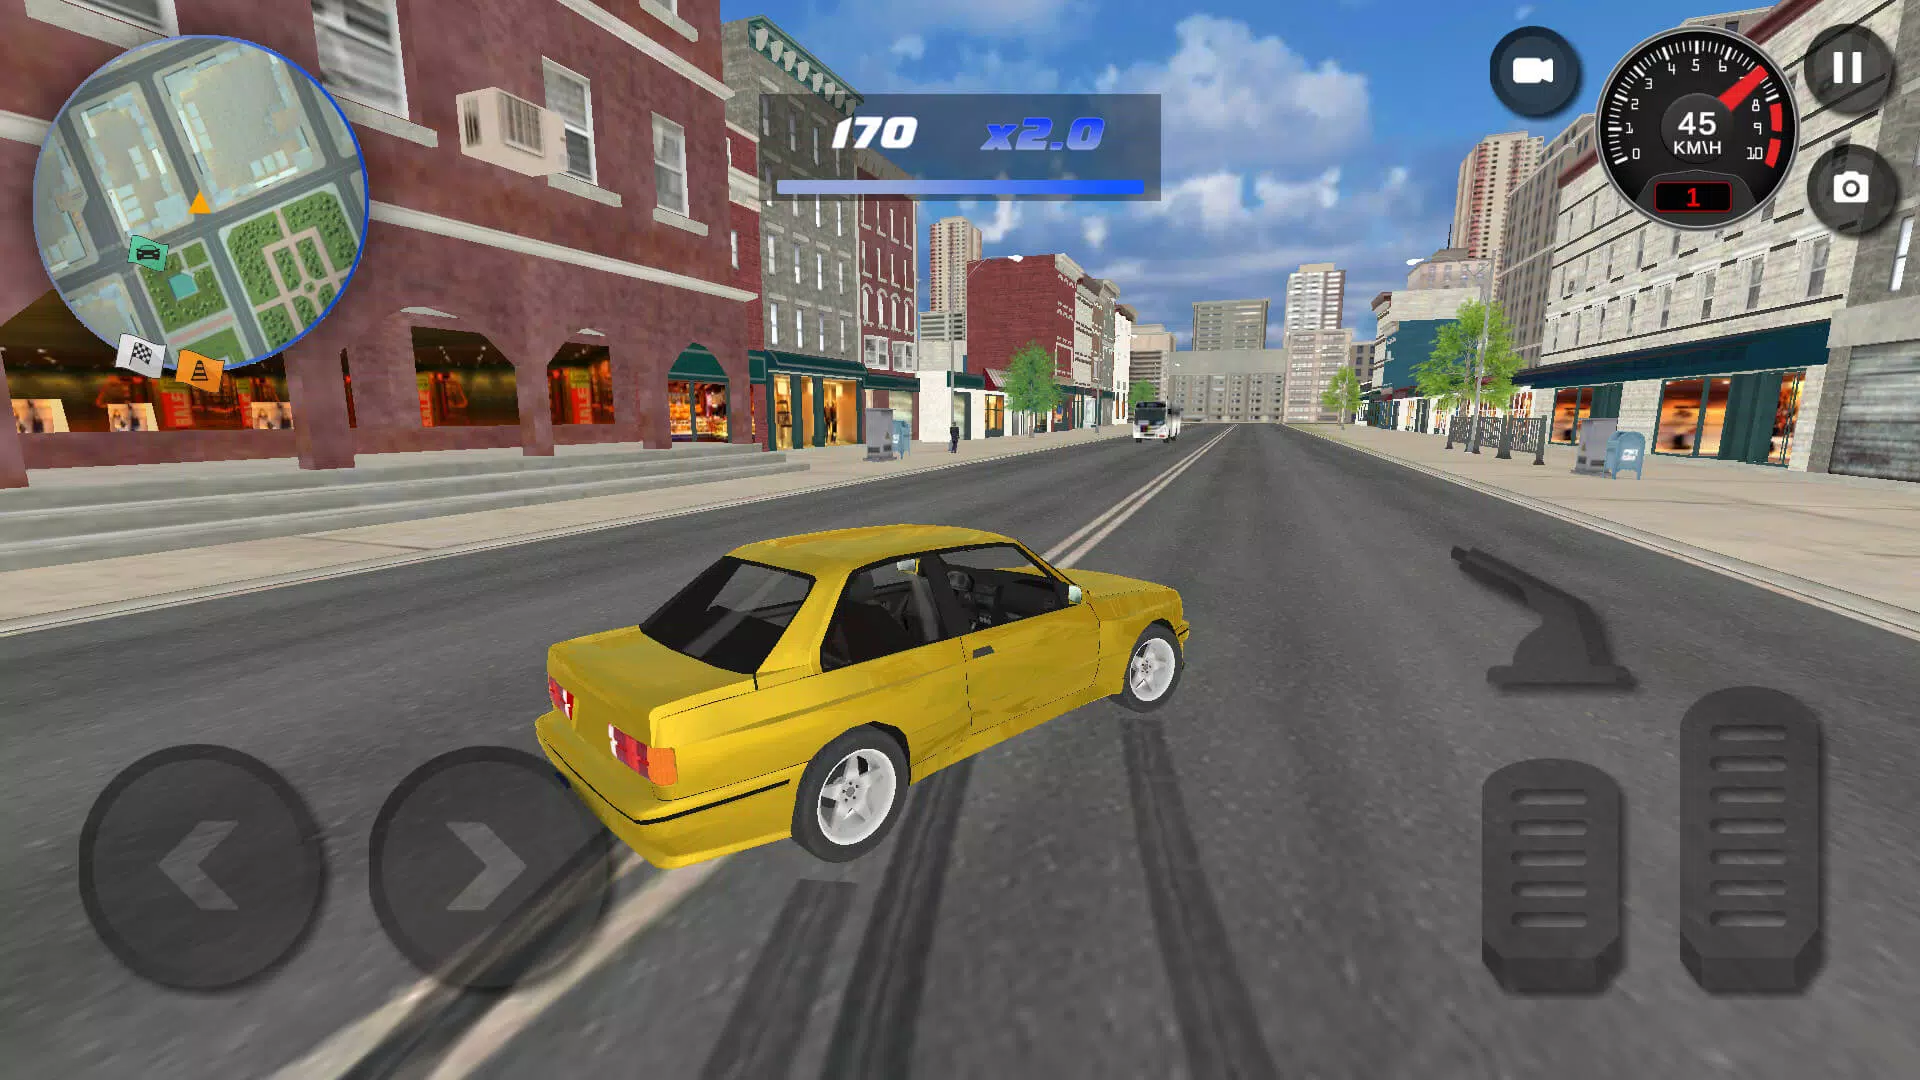 Jogos De Carros Drift Offline versão móvel andróide iOS apk baixar